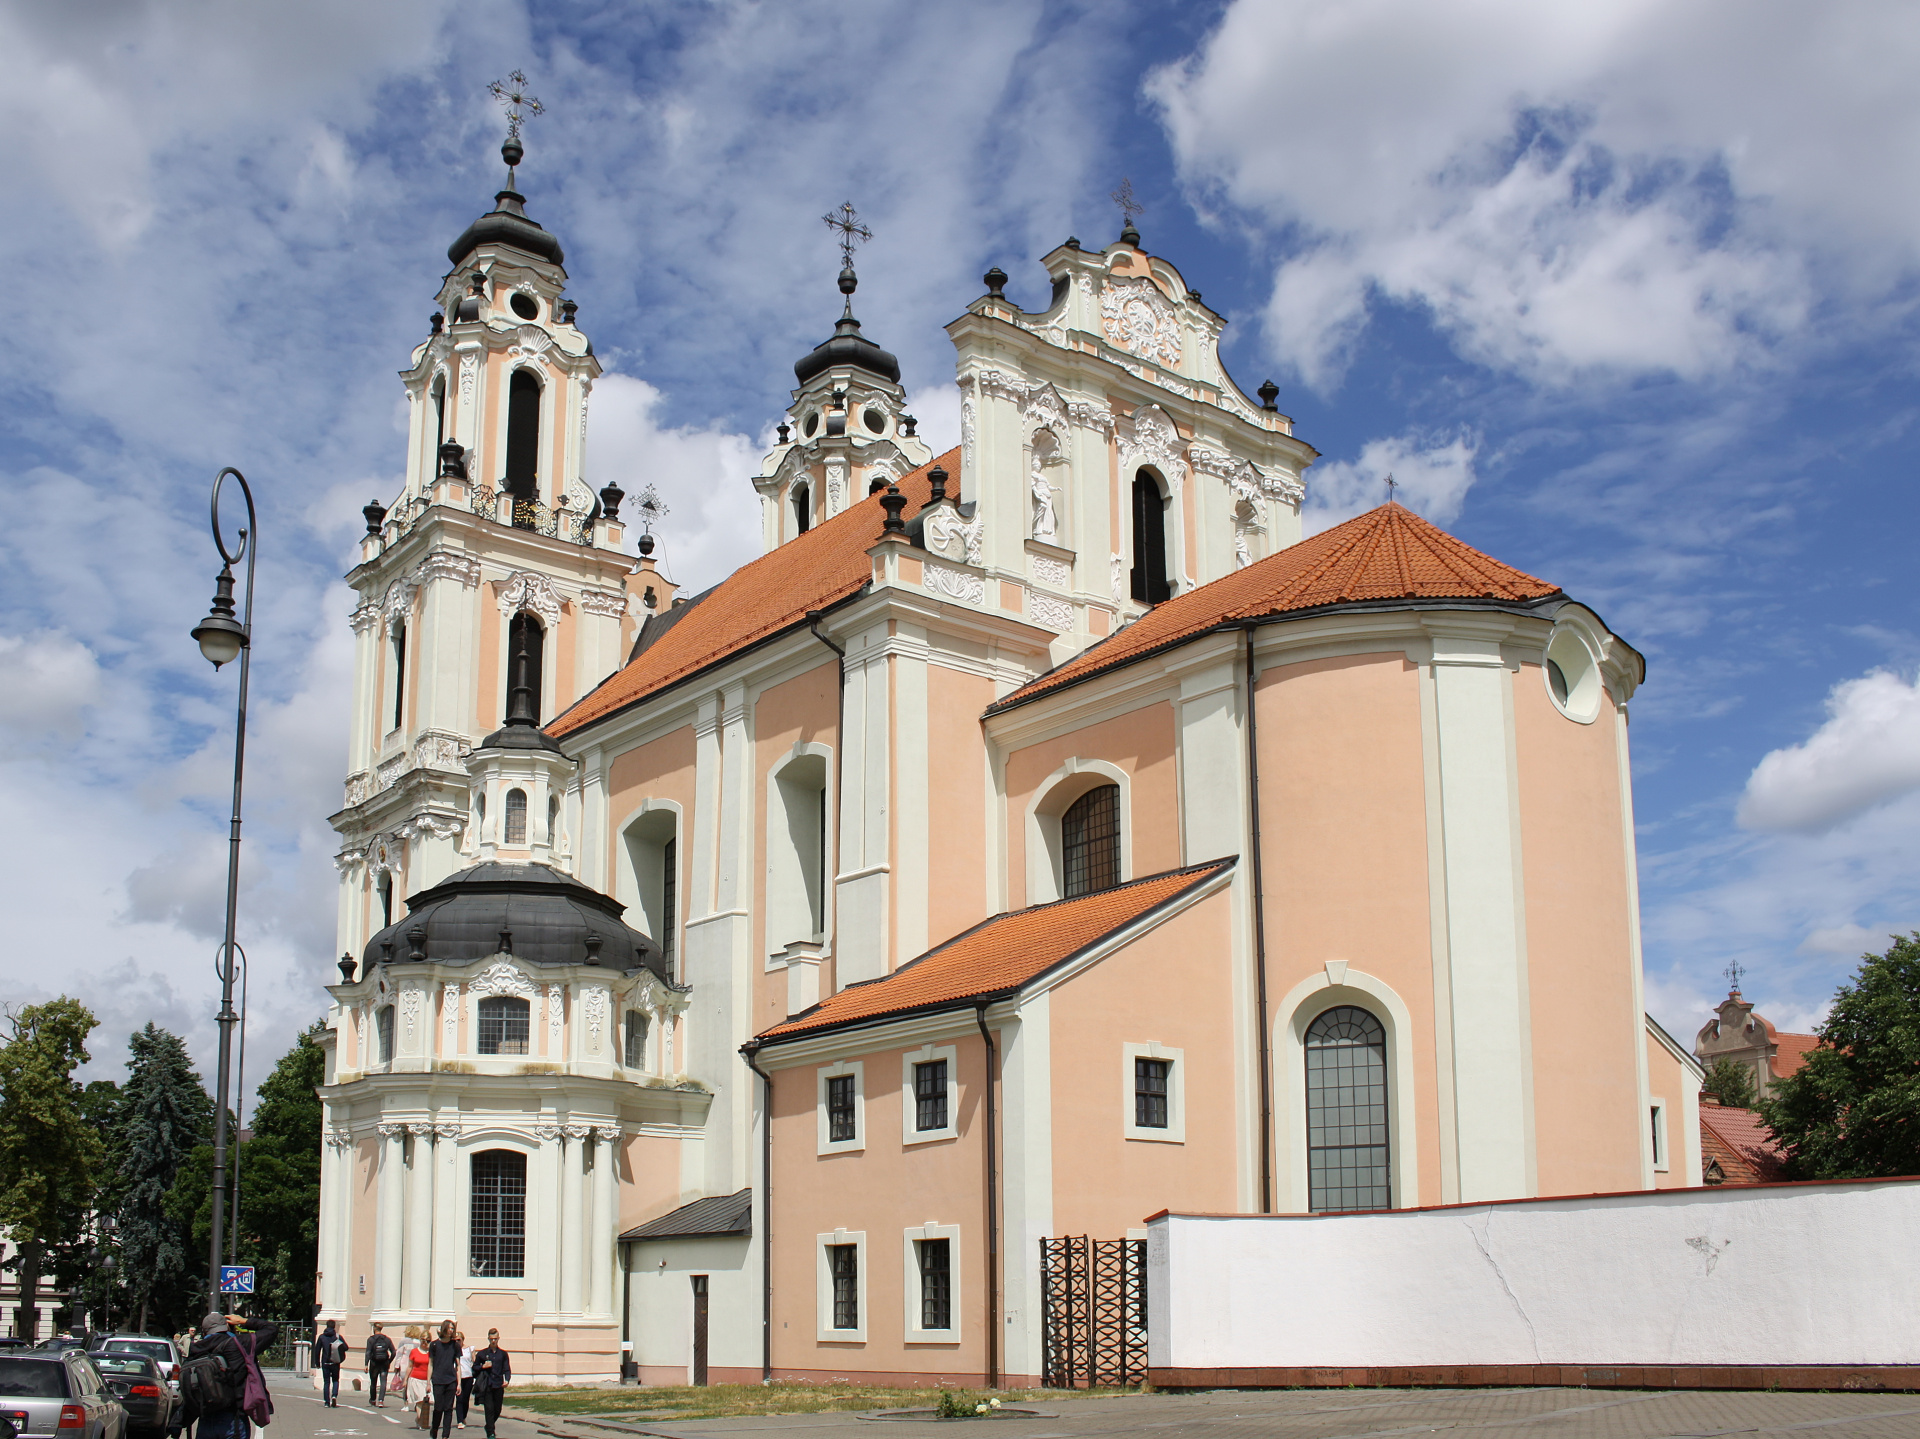 Šv. Kotrynos bažnyčia - St. Catherine's Church (Travels » Vilnius » Churches)